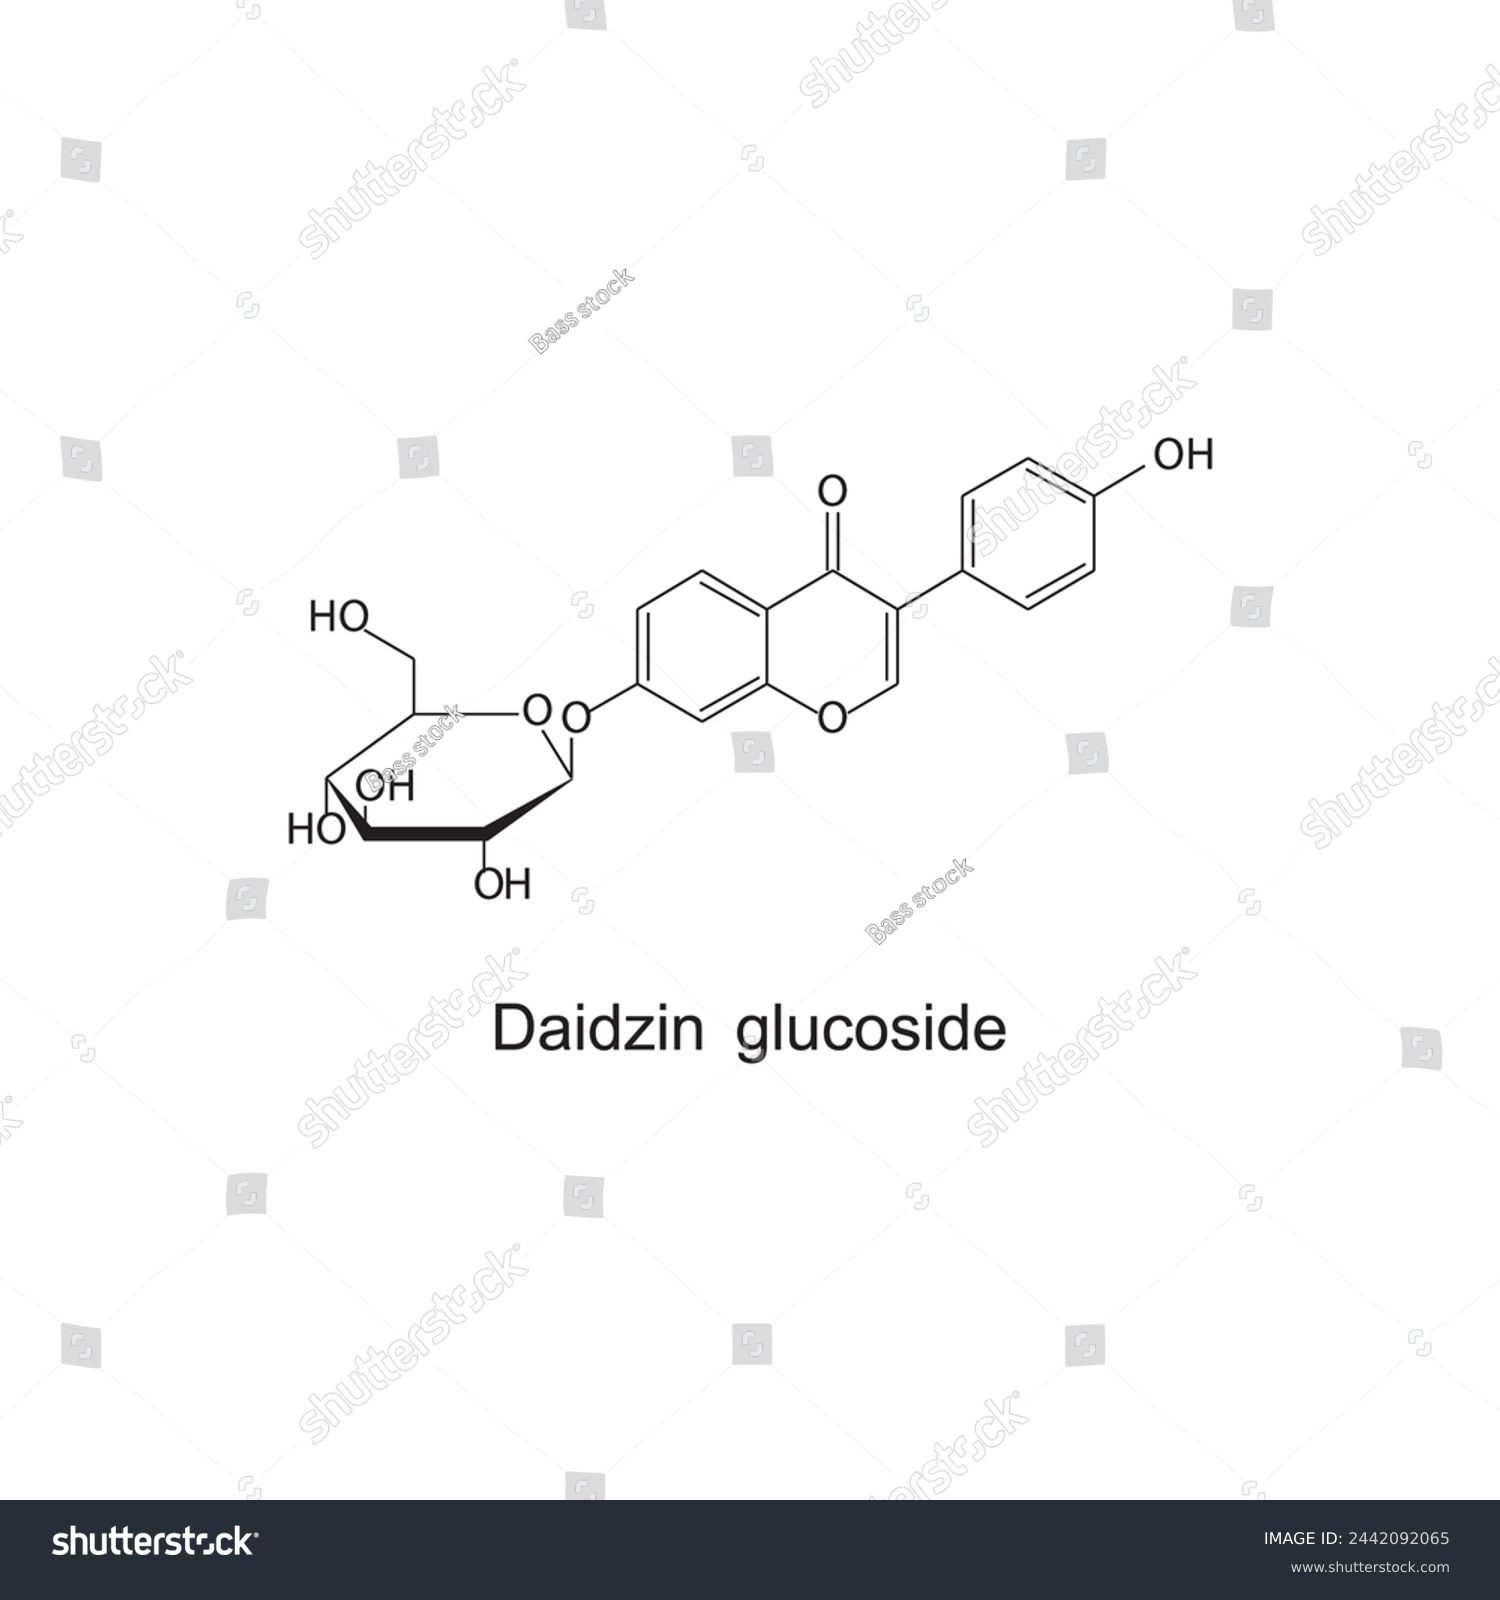 SVG of Daidzein glucoside skeletal structure diagram.Isoflavanone compound molecule scientific illustration  svg